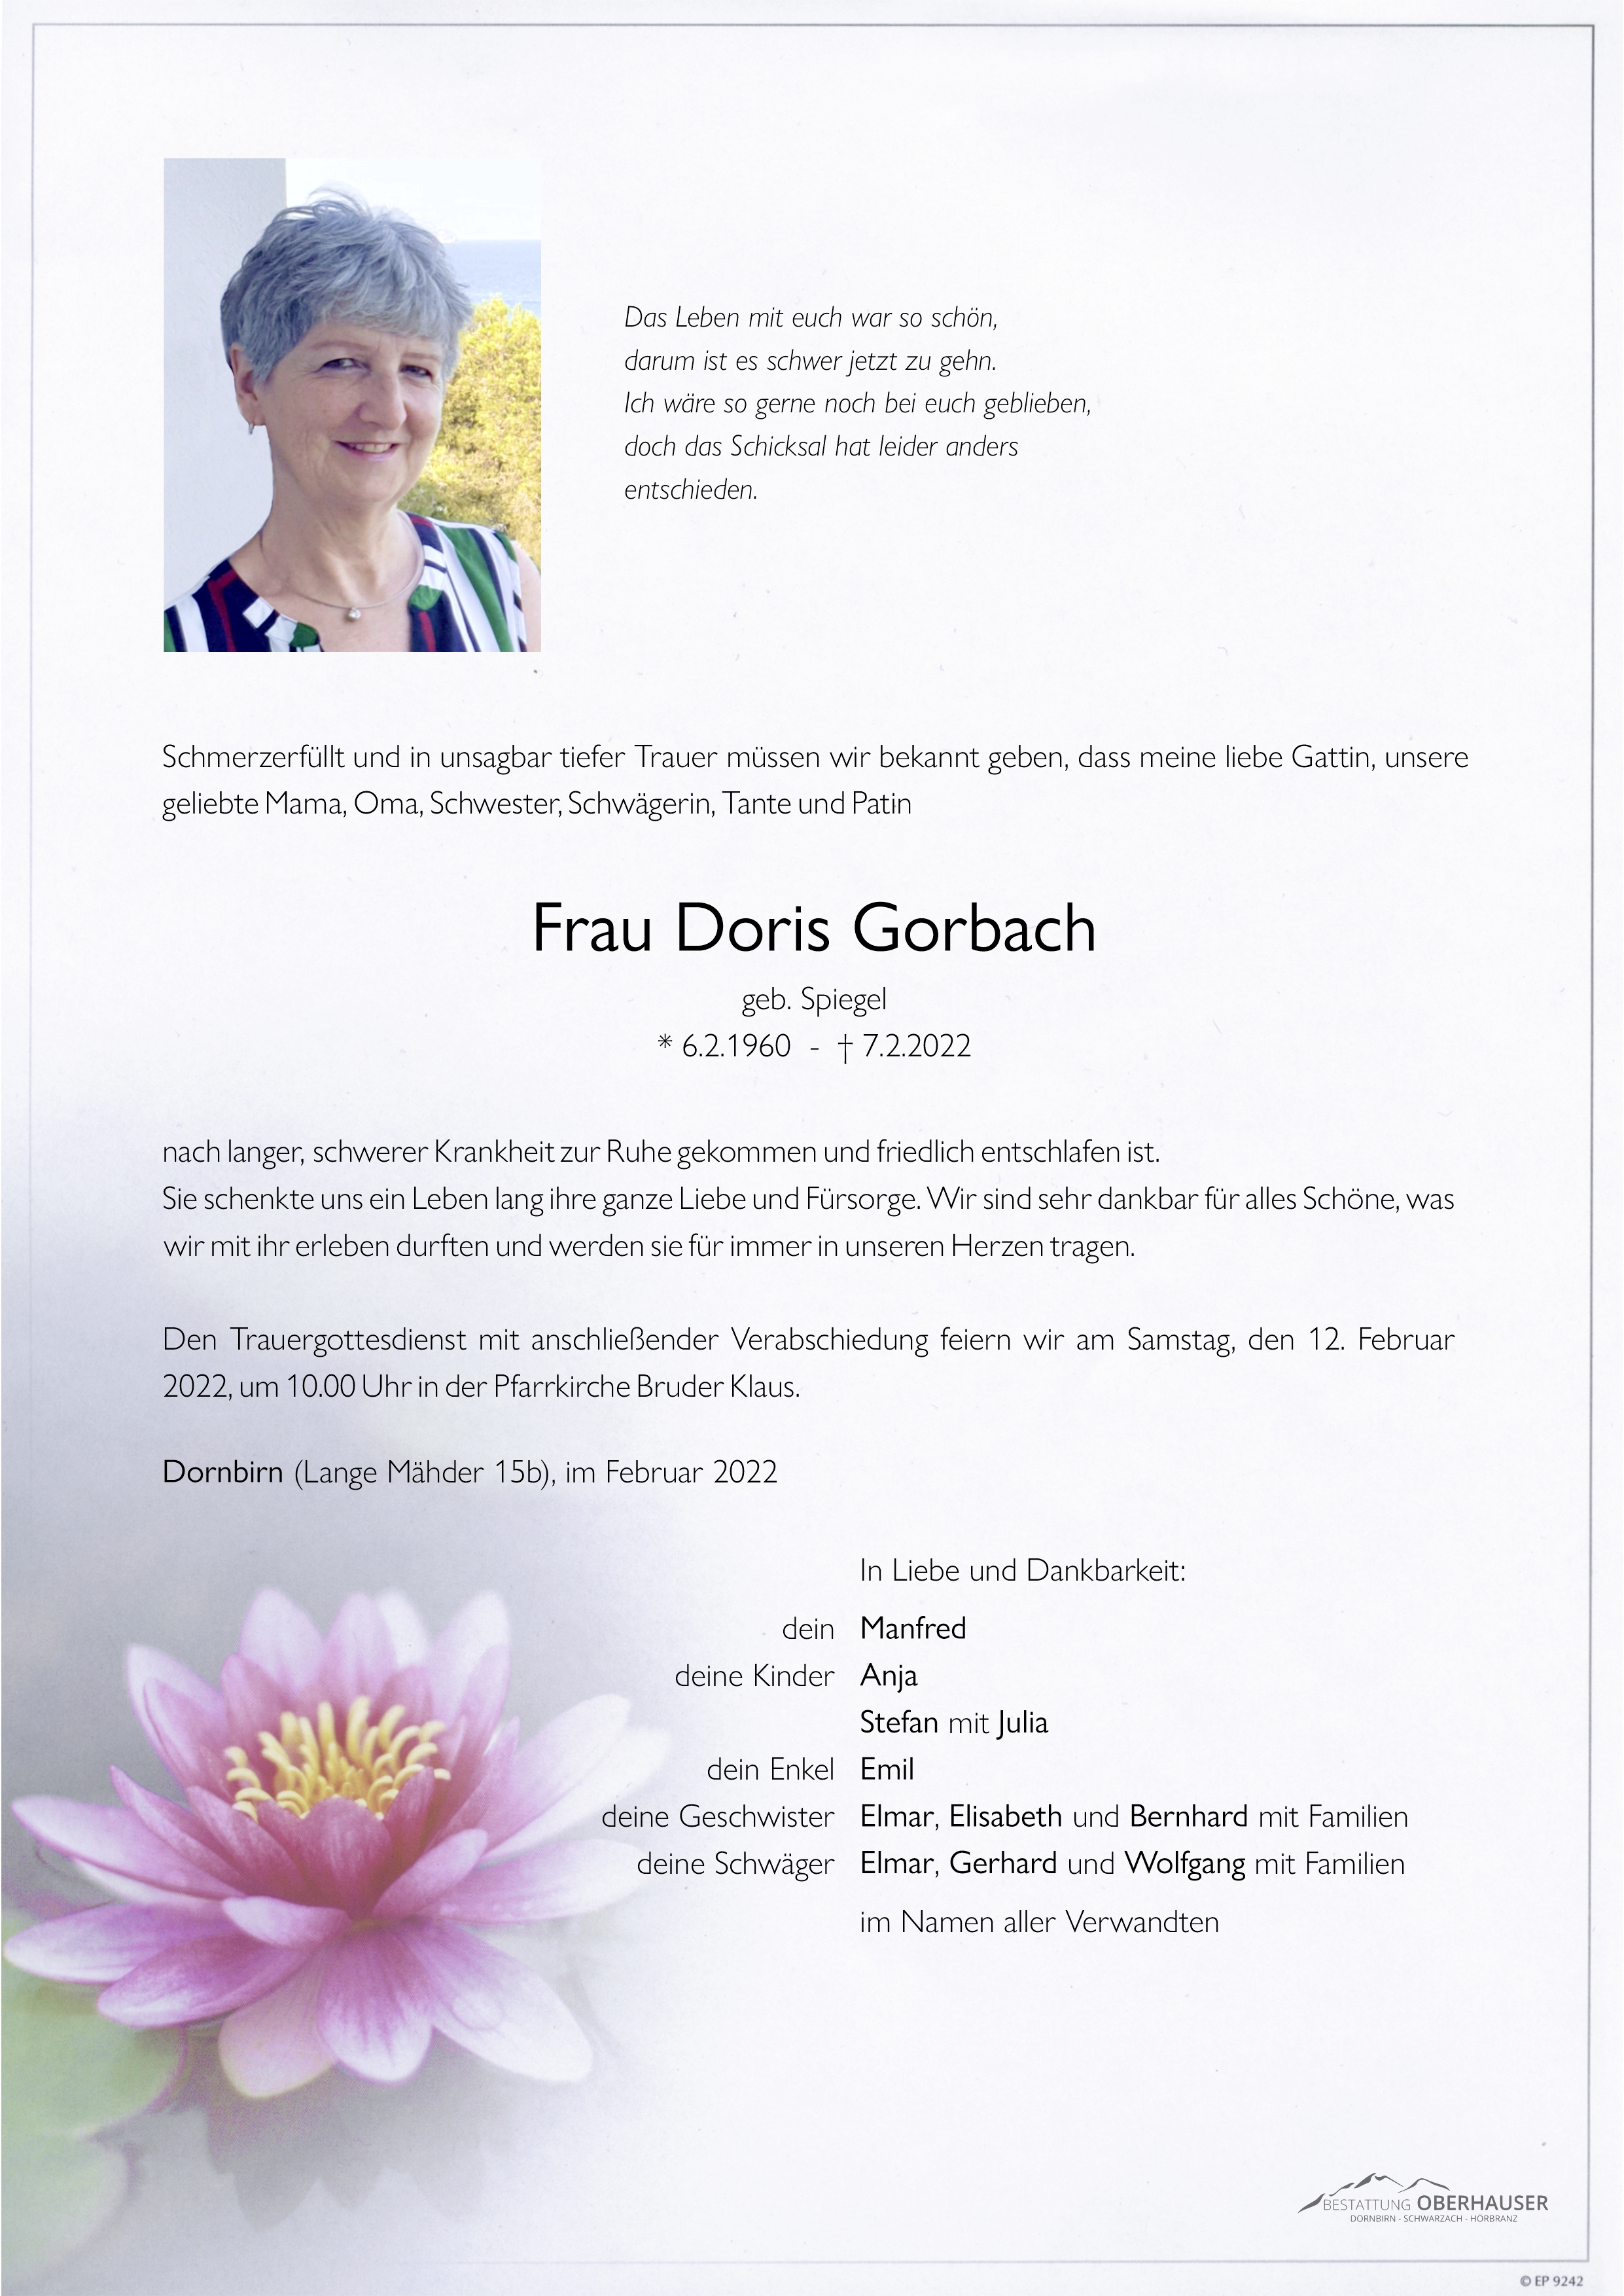 Doris Gorbach